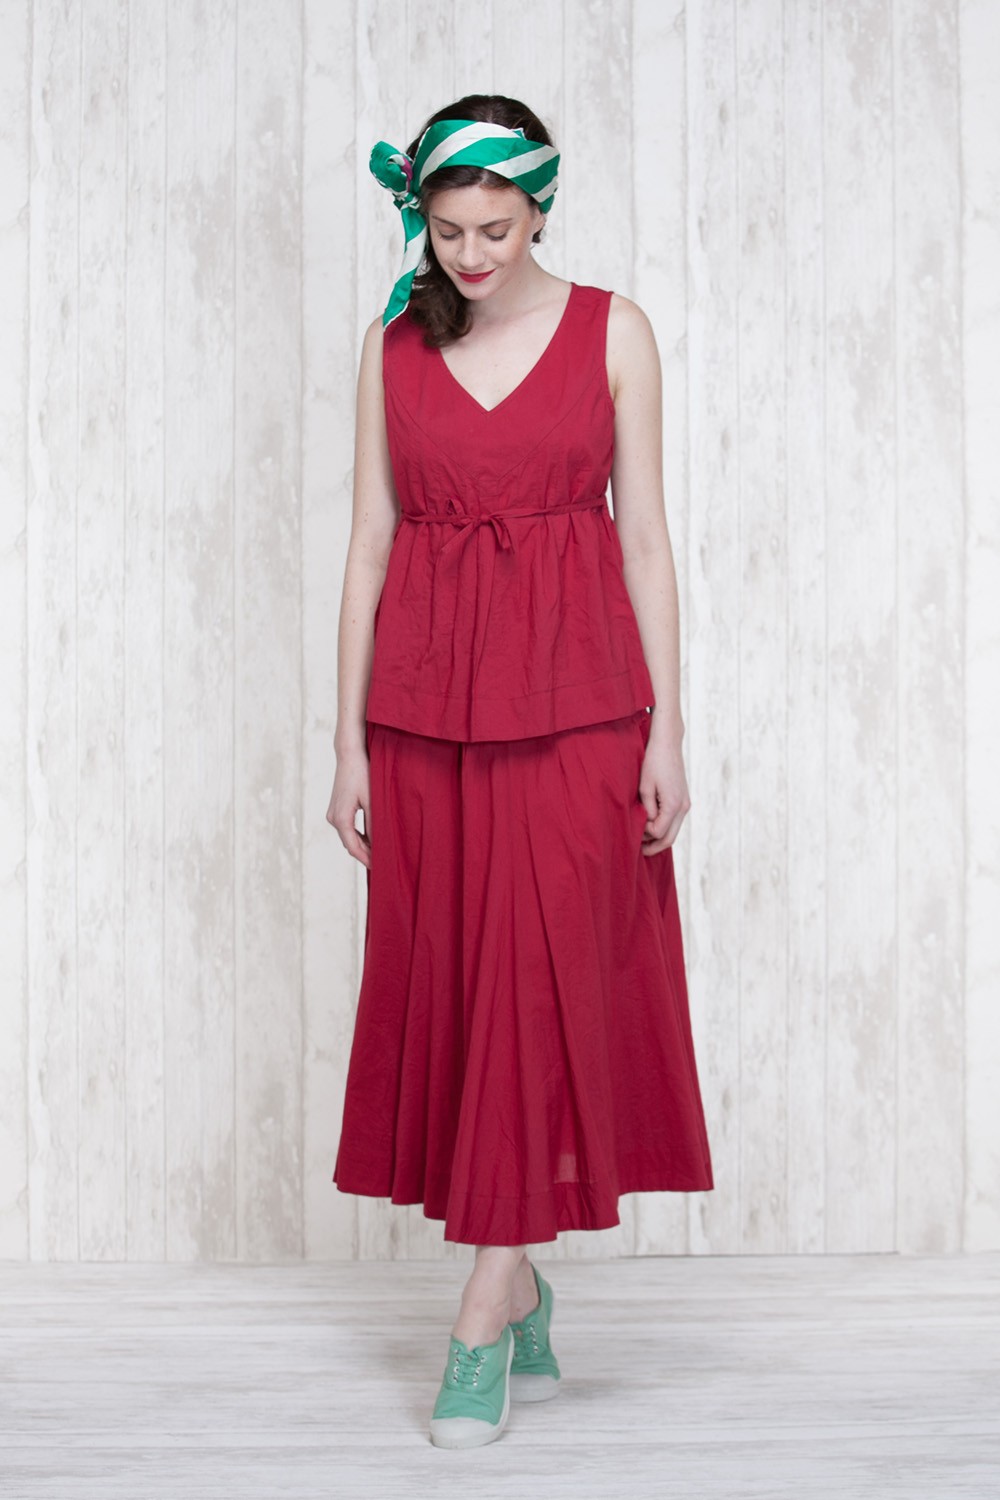 Skirt Red  666-30